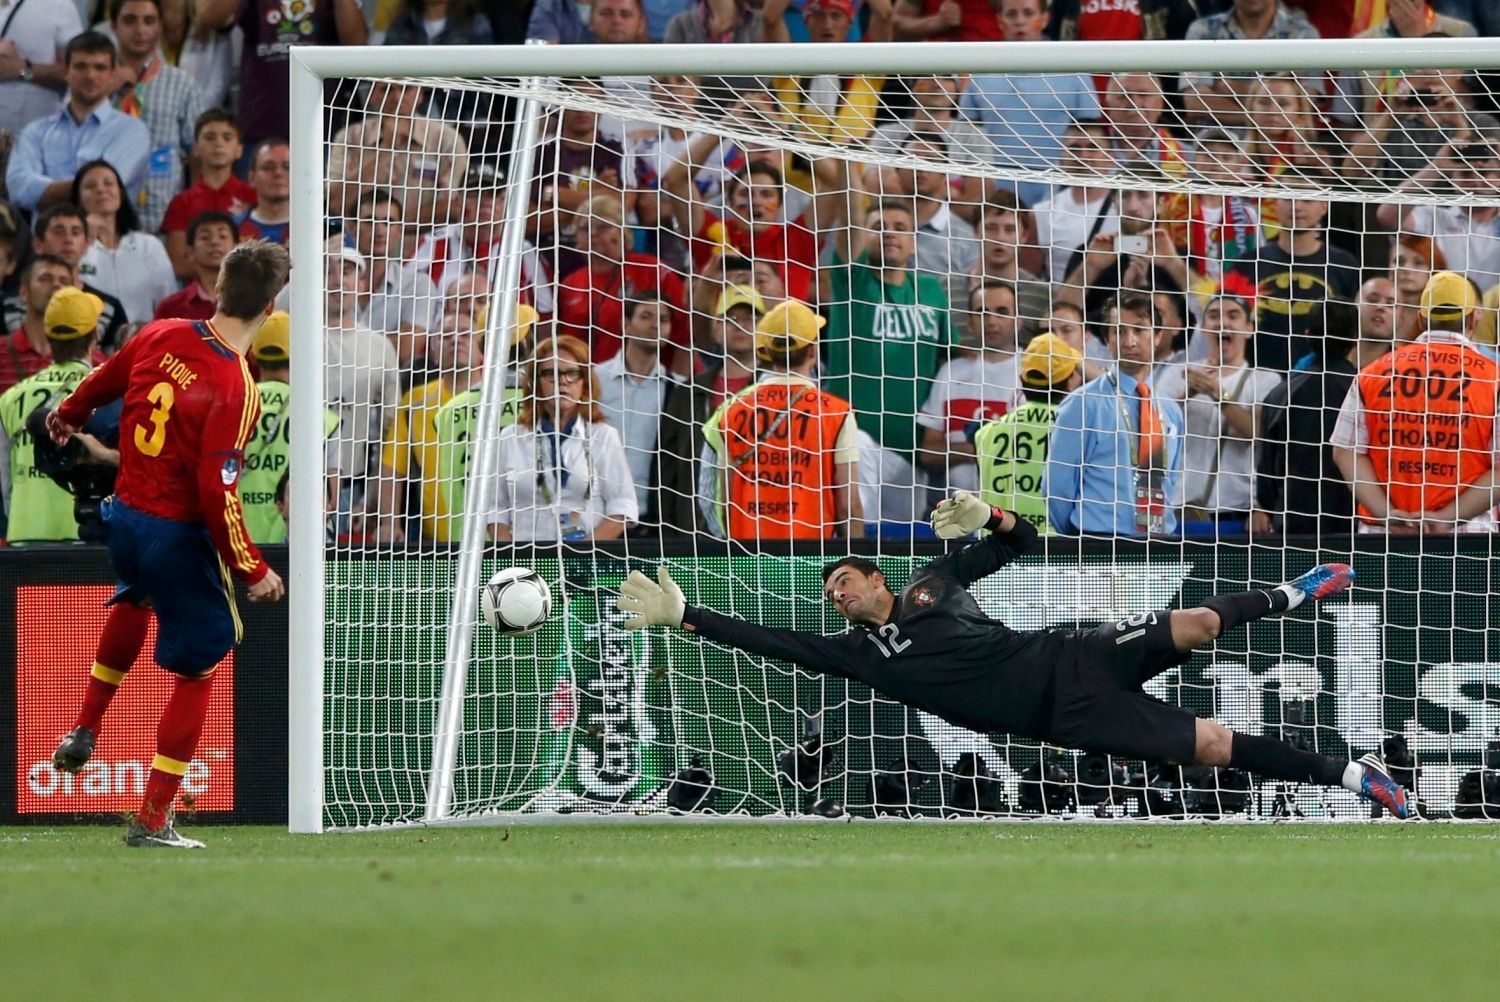 Gerard Piqué proměňuje penaltu během semifinálového utkání Eura 2012 mezi Portugalskem a Španělskem.